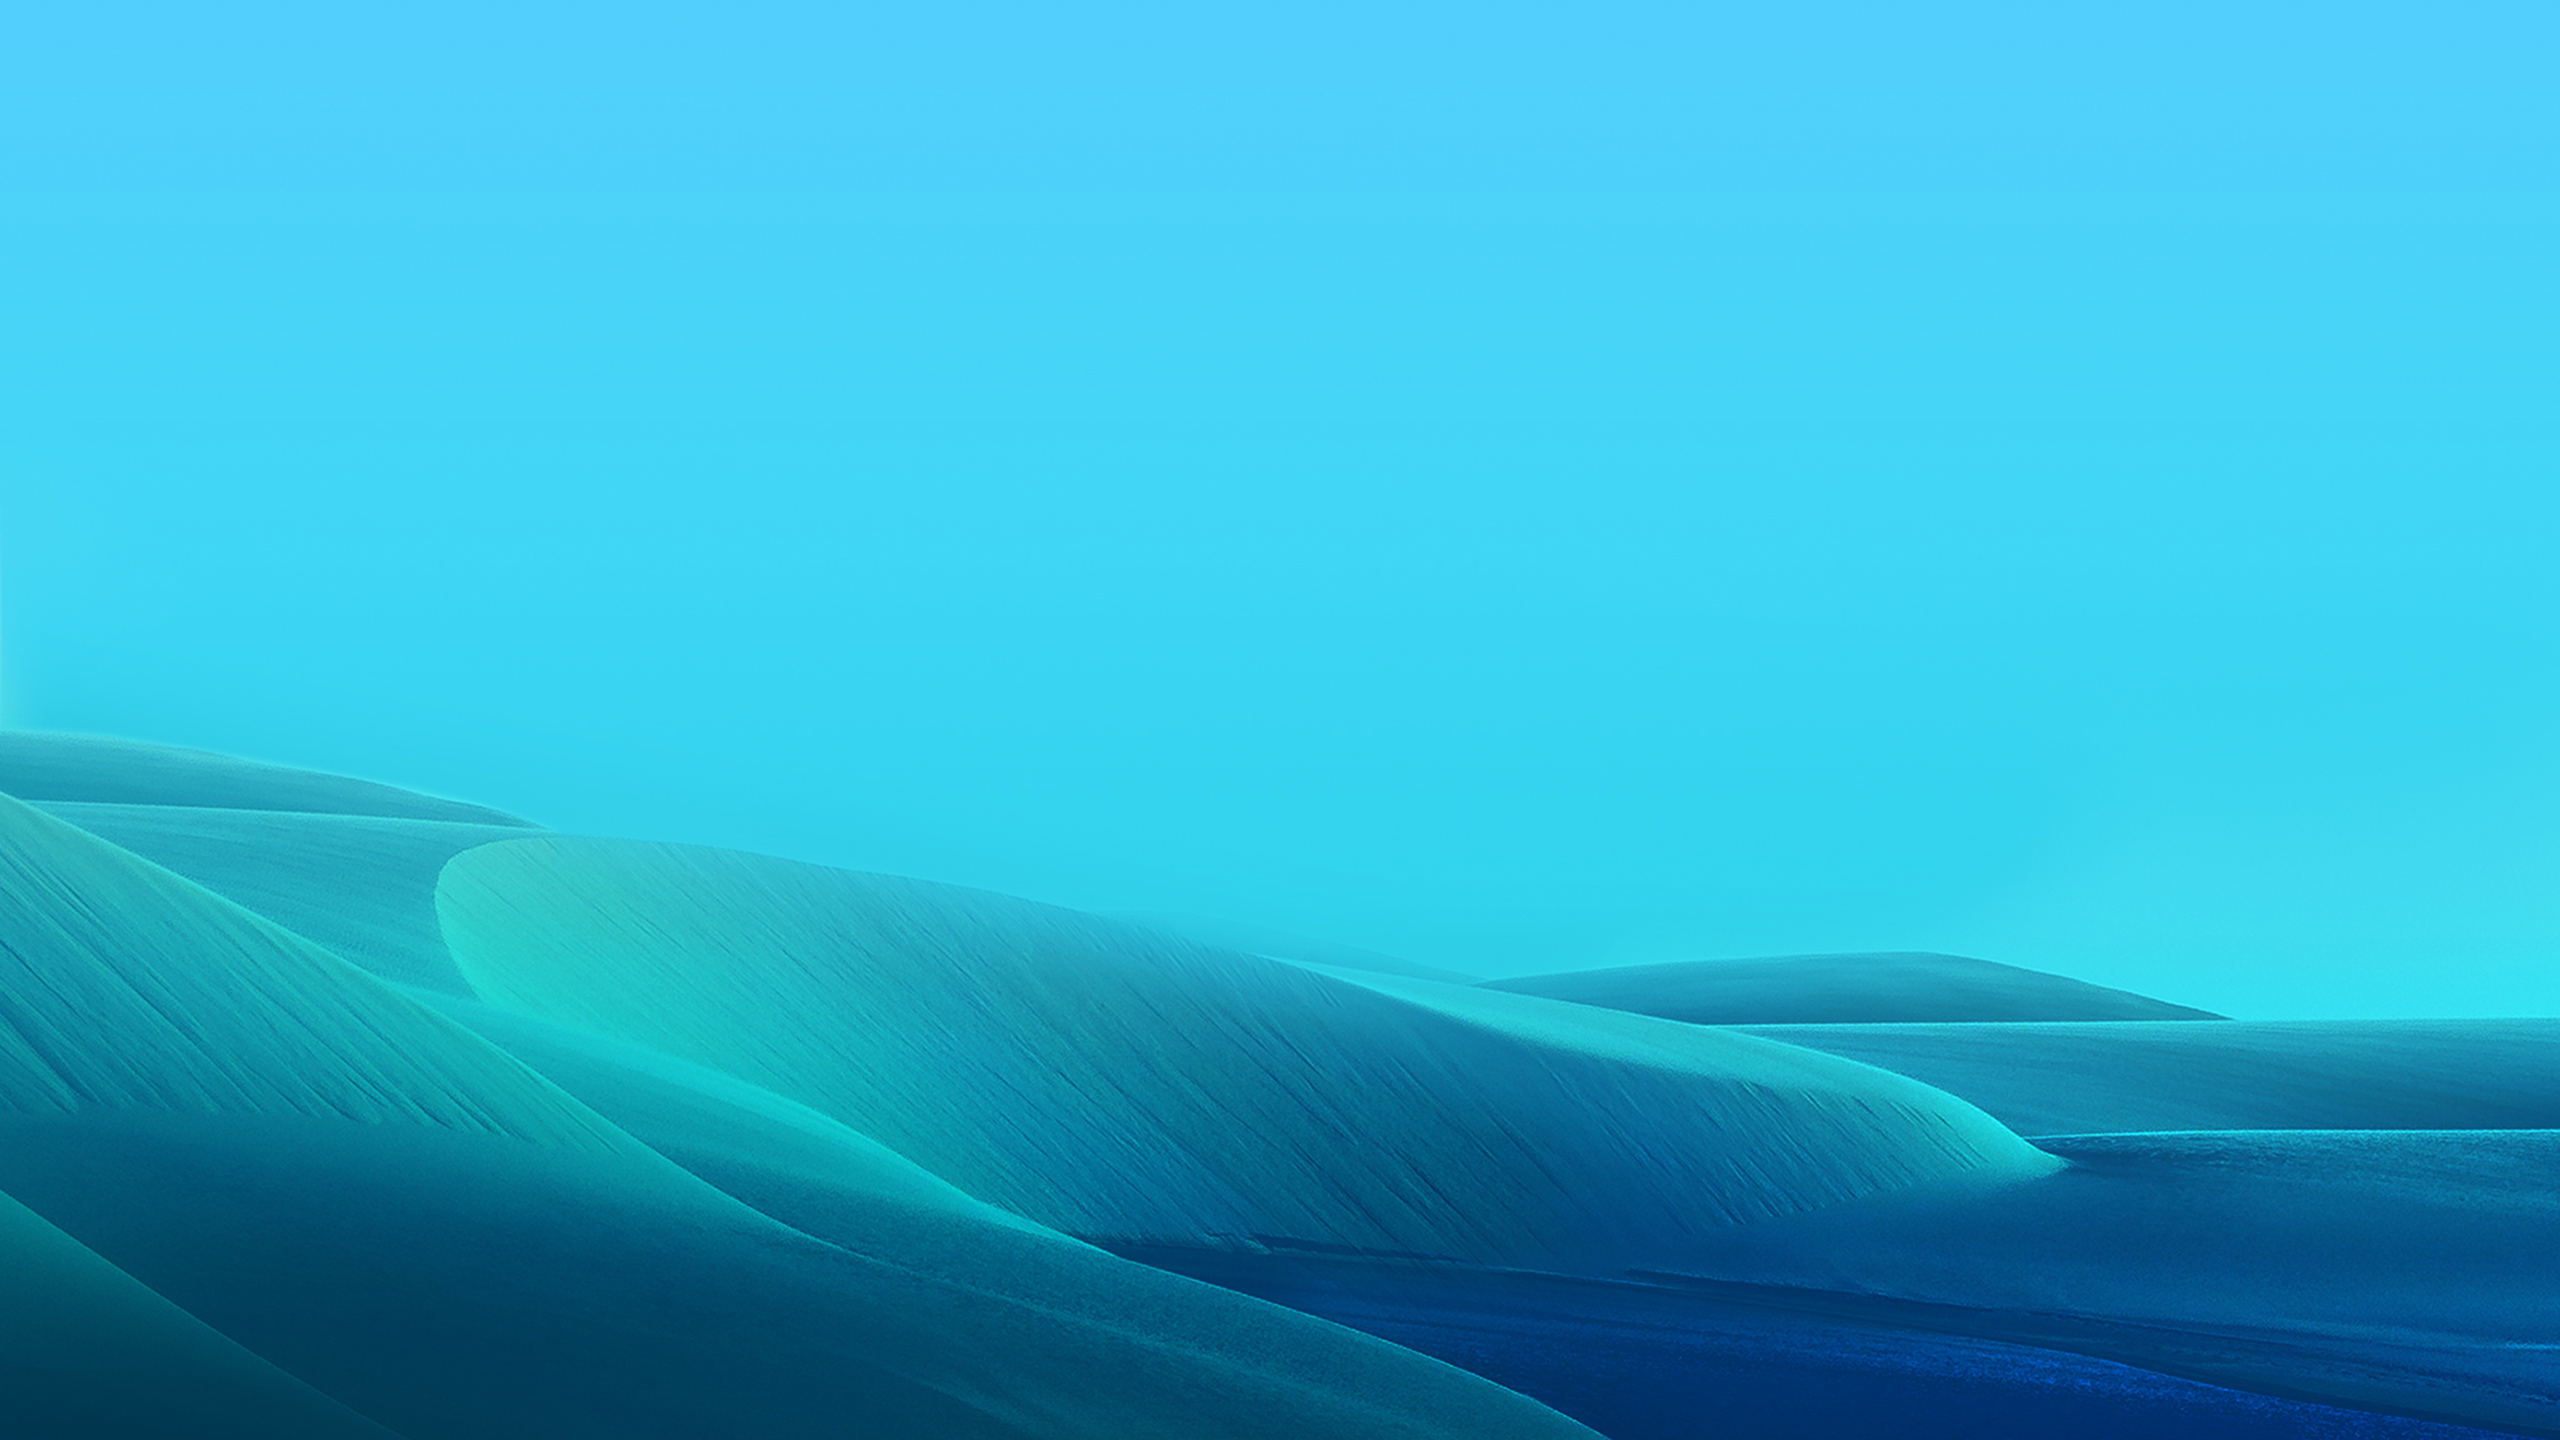 Samsung Galaxy M20 Desert Landscape Wallpapers